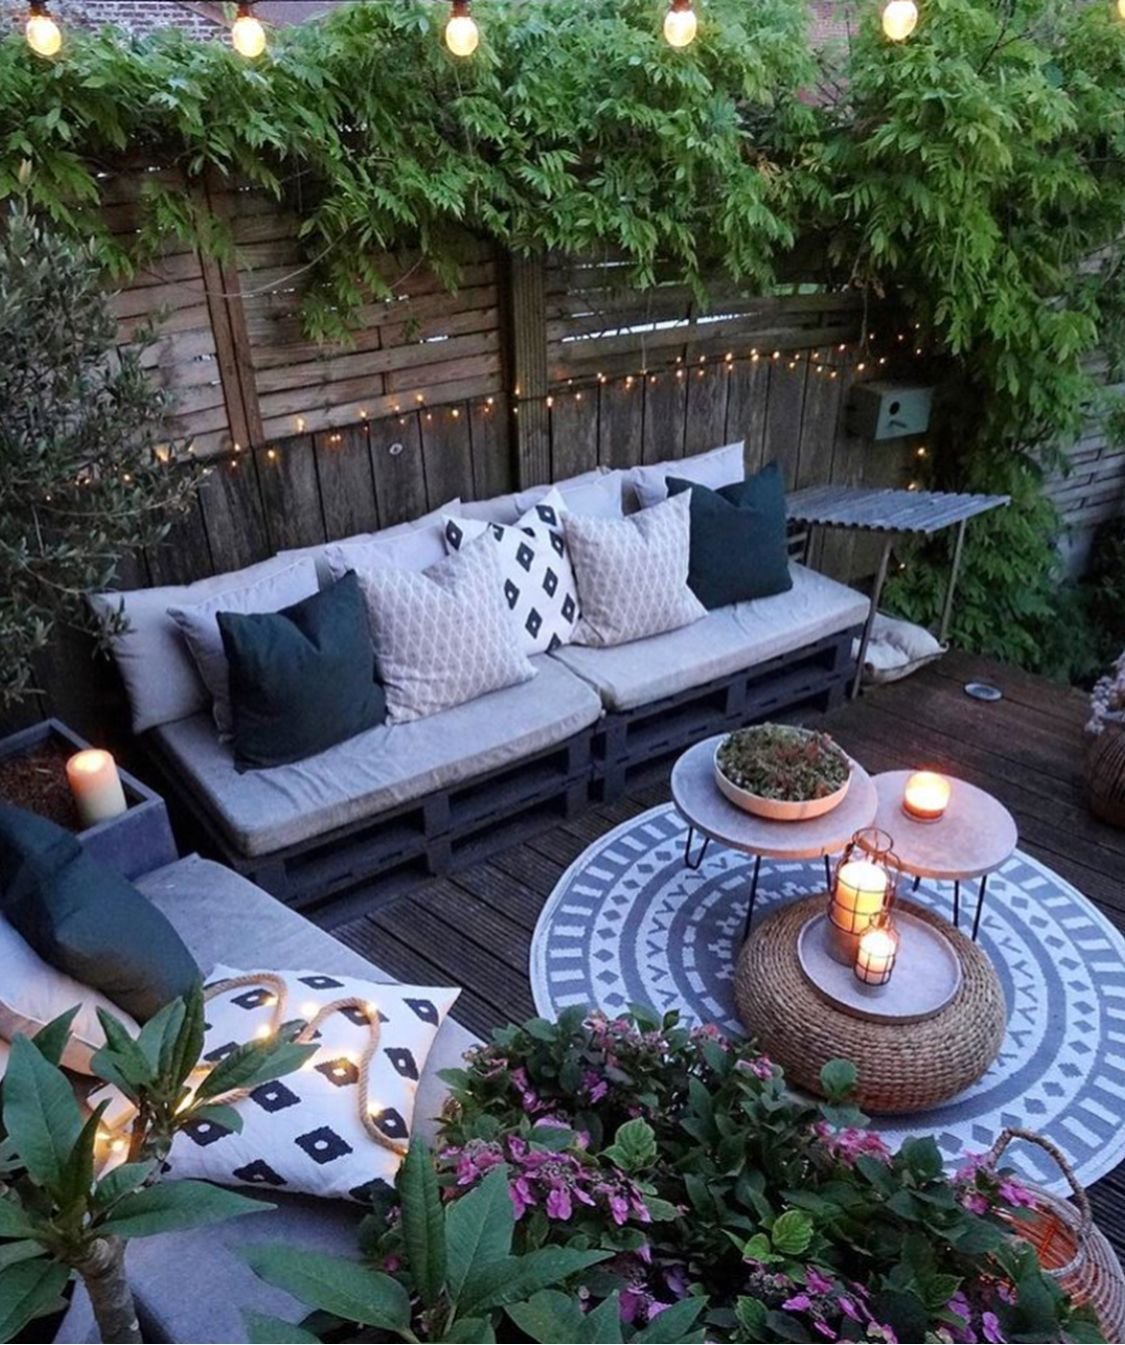 Недорогие садовые домики - комфорт и уют на даче